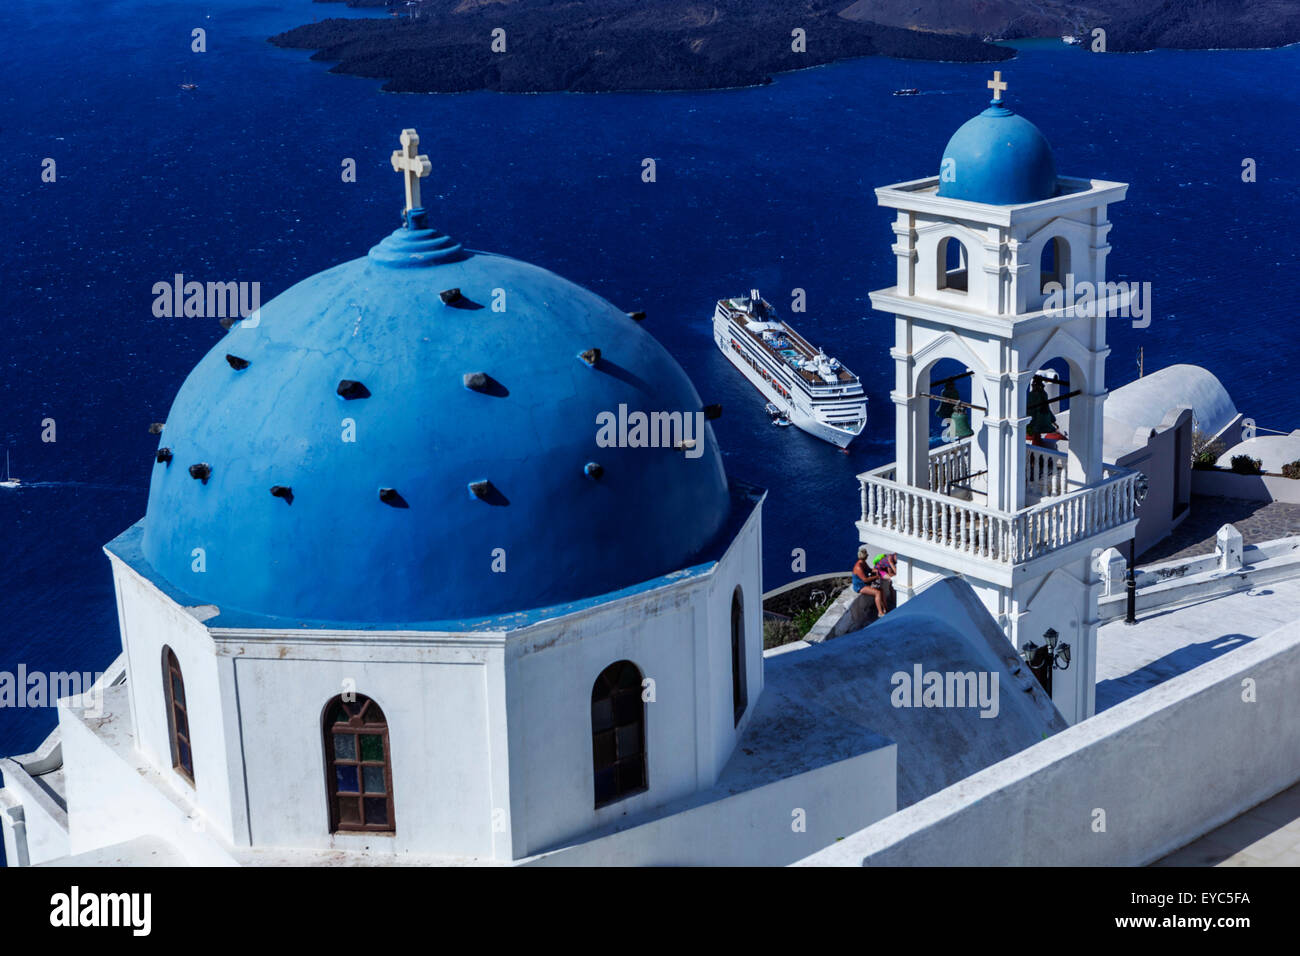 Anastasi Kirche in Imerovigli, Santorini blaue Kuppel auf Klippe Kykladen Griechische Insel Griechenland Inseln festgemacht Kreuzfahrtschiff in Caldera Meer Stockfoto